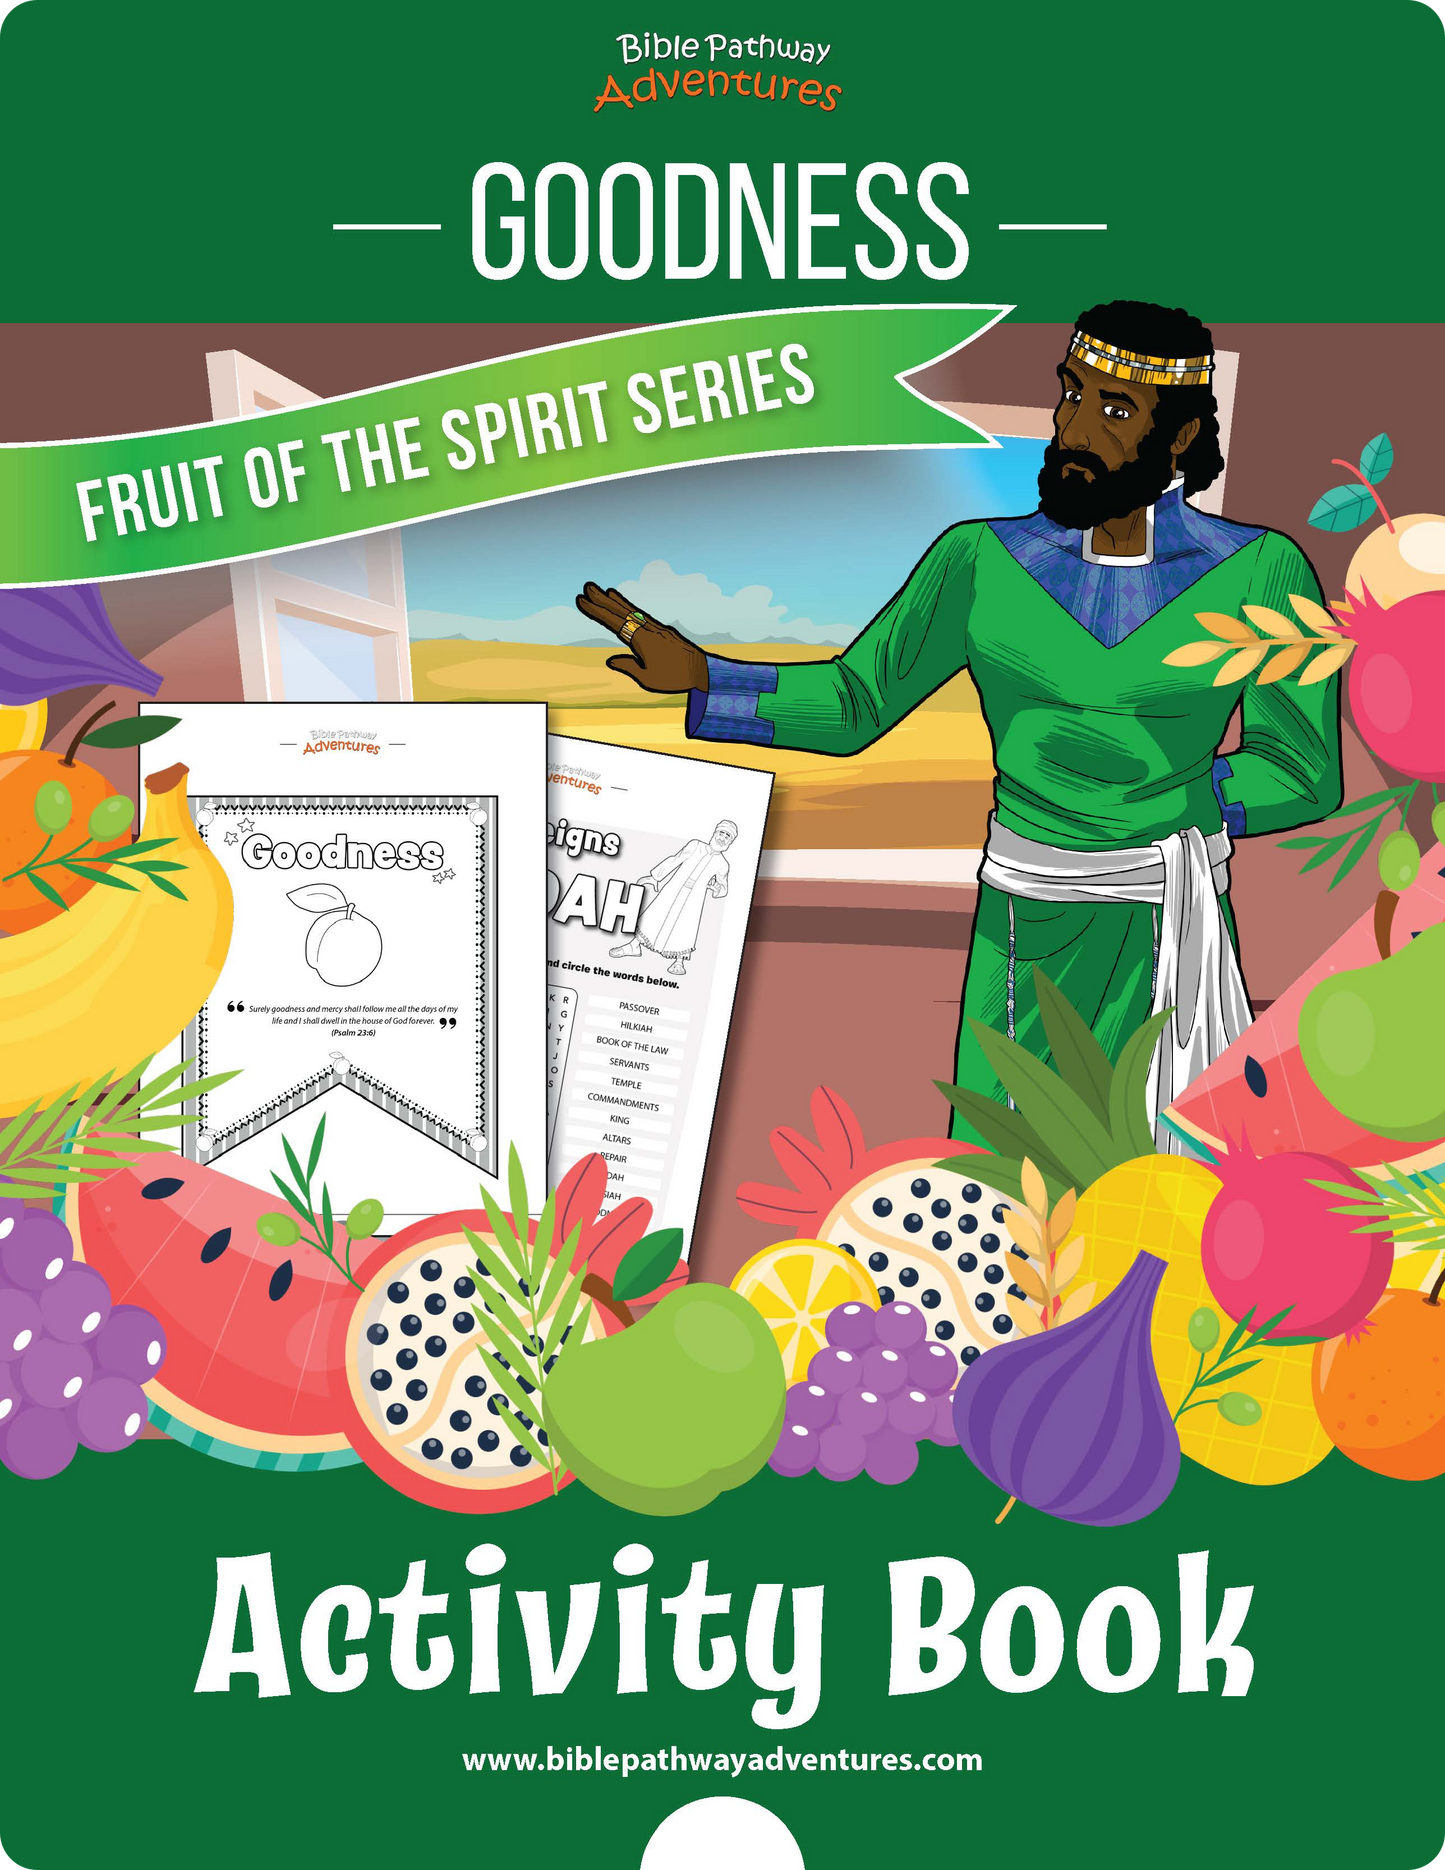 Bondad: Libro de Actividades del Fruto del Espíritu